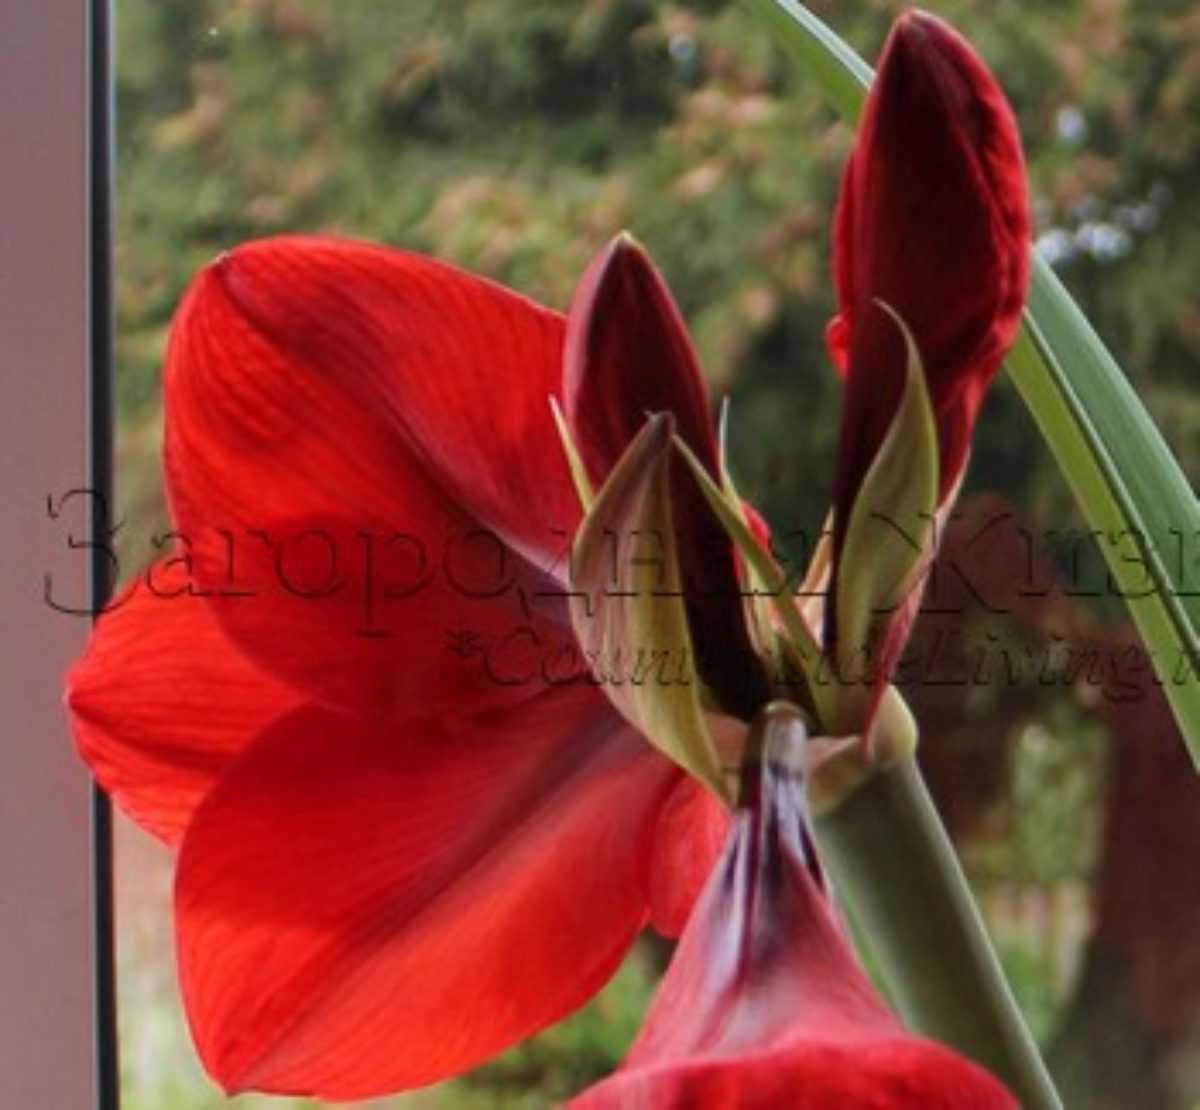 Гиппеаструм - уход в домашних условиях и подготовка к цветению, сорта и фото